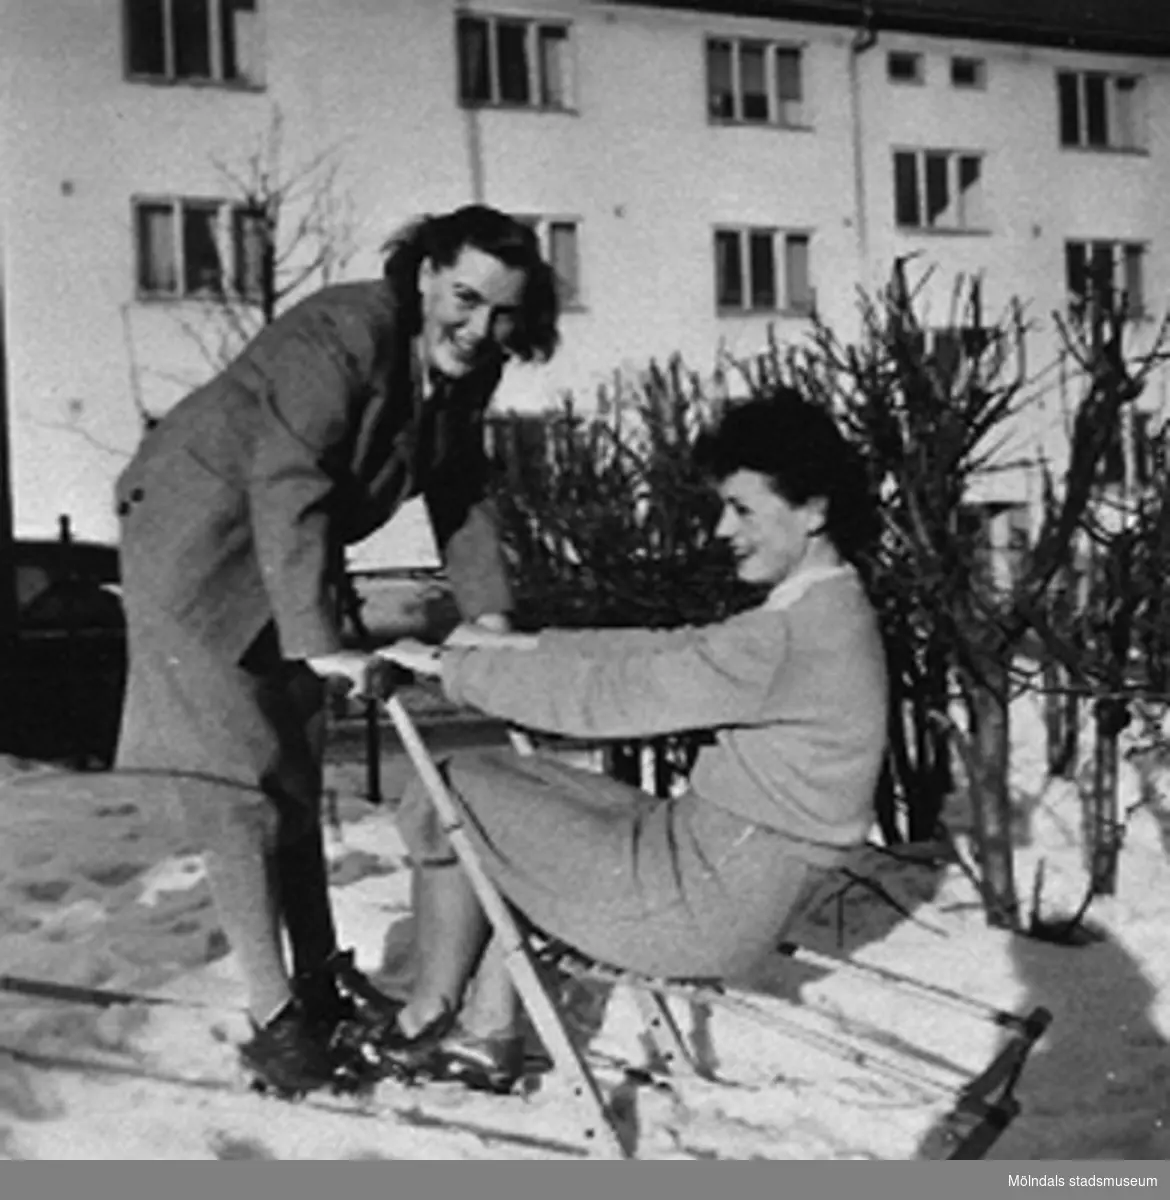 Lärarna på Krokslätts daghem åker spark vid 
Krokslätts daghem, 1948 - 1951. I bakgrunden ses bostadshuset Dalhemsgatan 10 - 12.